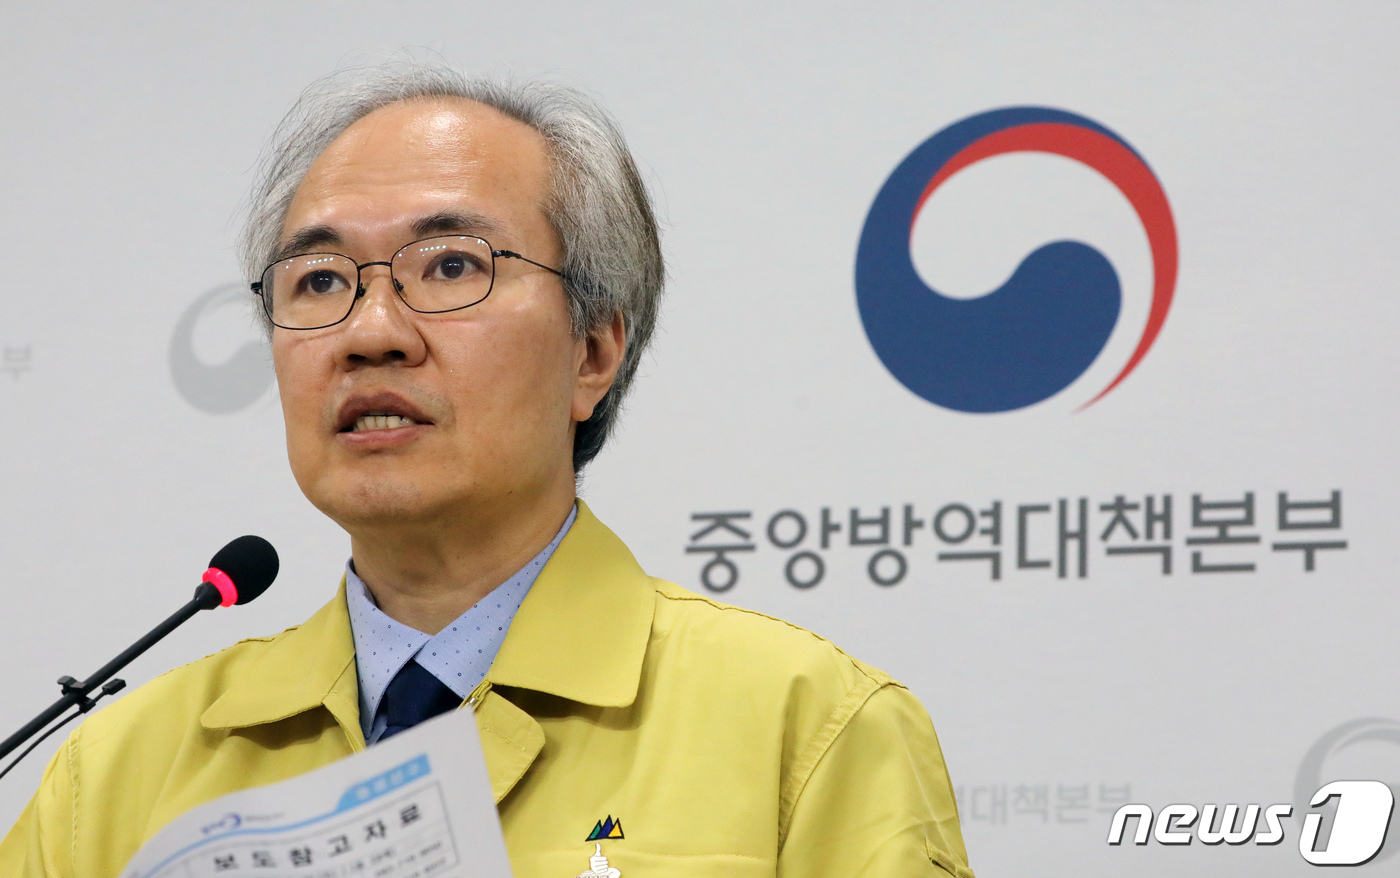 [속보] 서울 관악구 사무실 2명 늘어 11명, 의정부 아파트 관련 헬스장 1명 늘어 32명 | 인스티즈